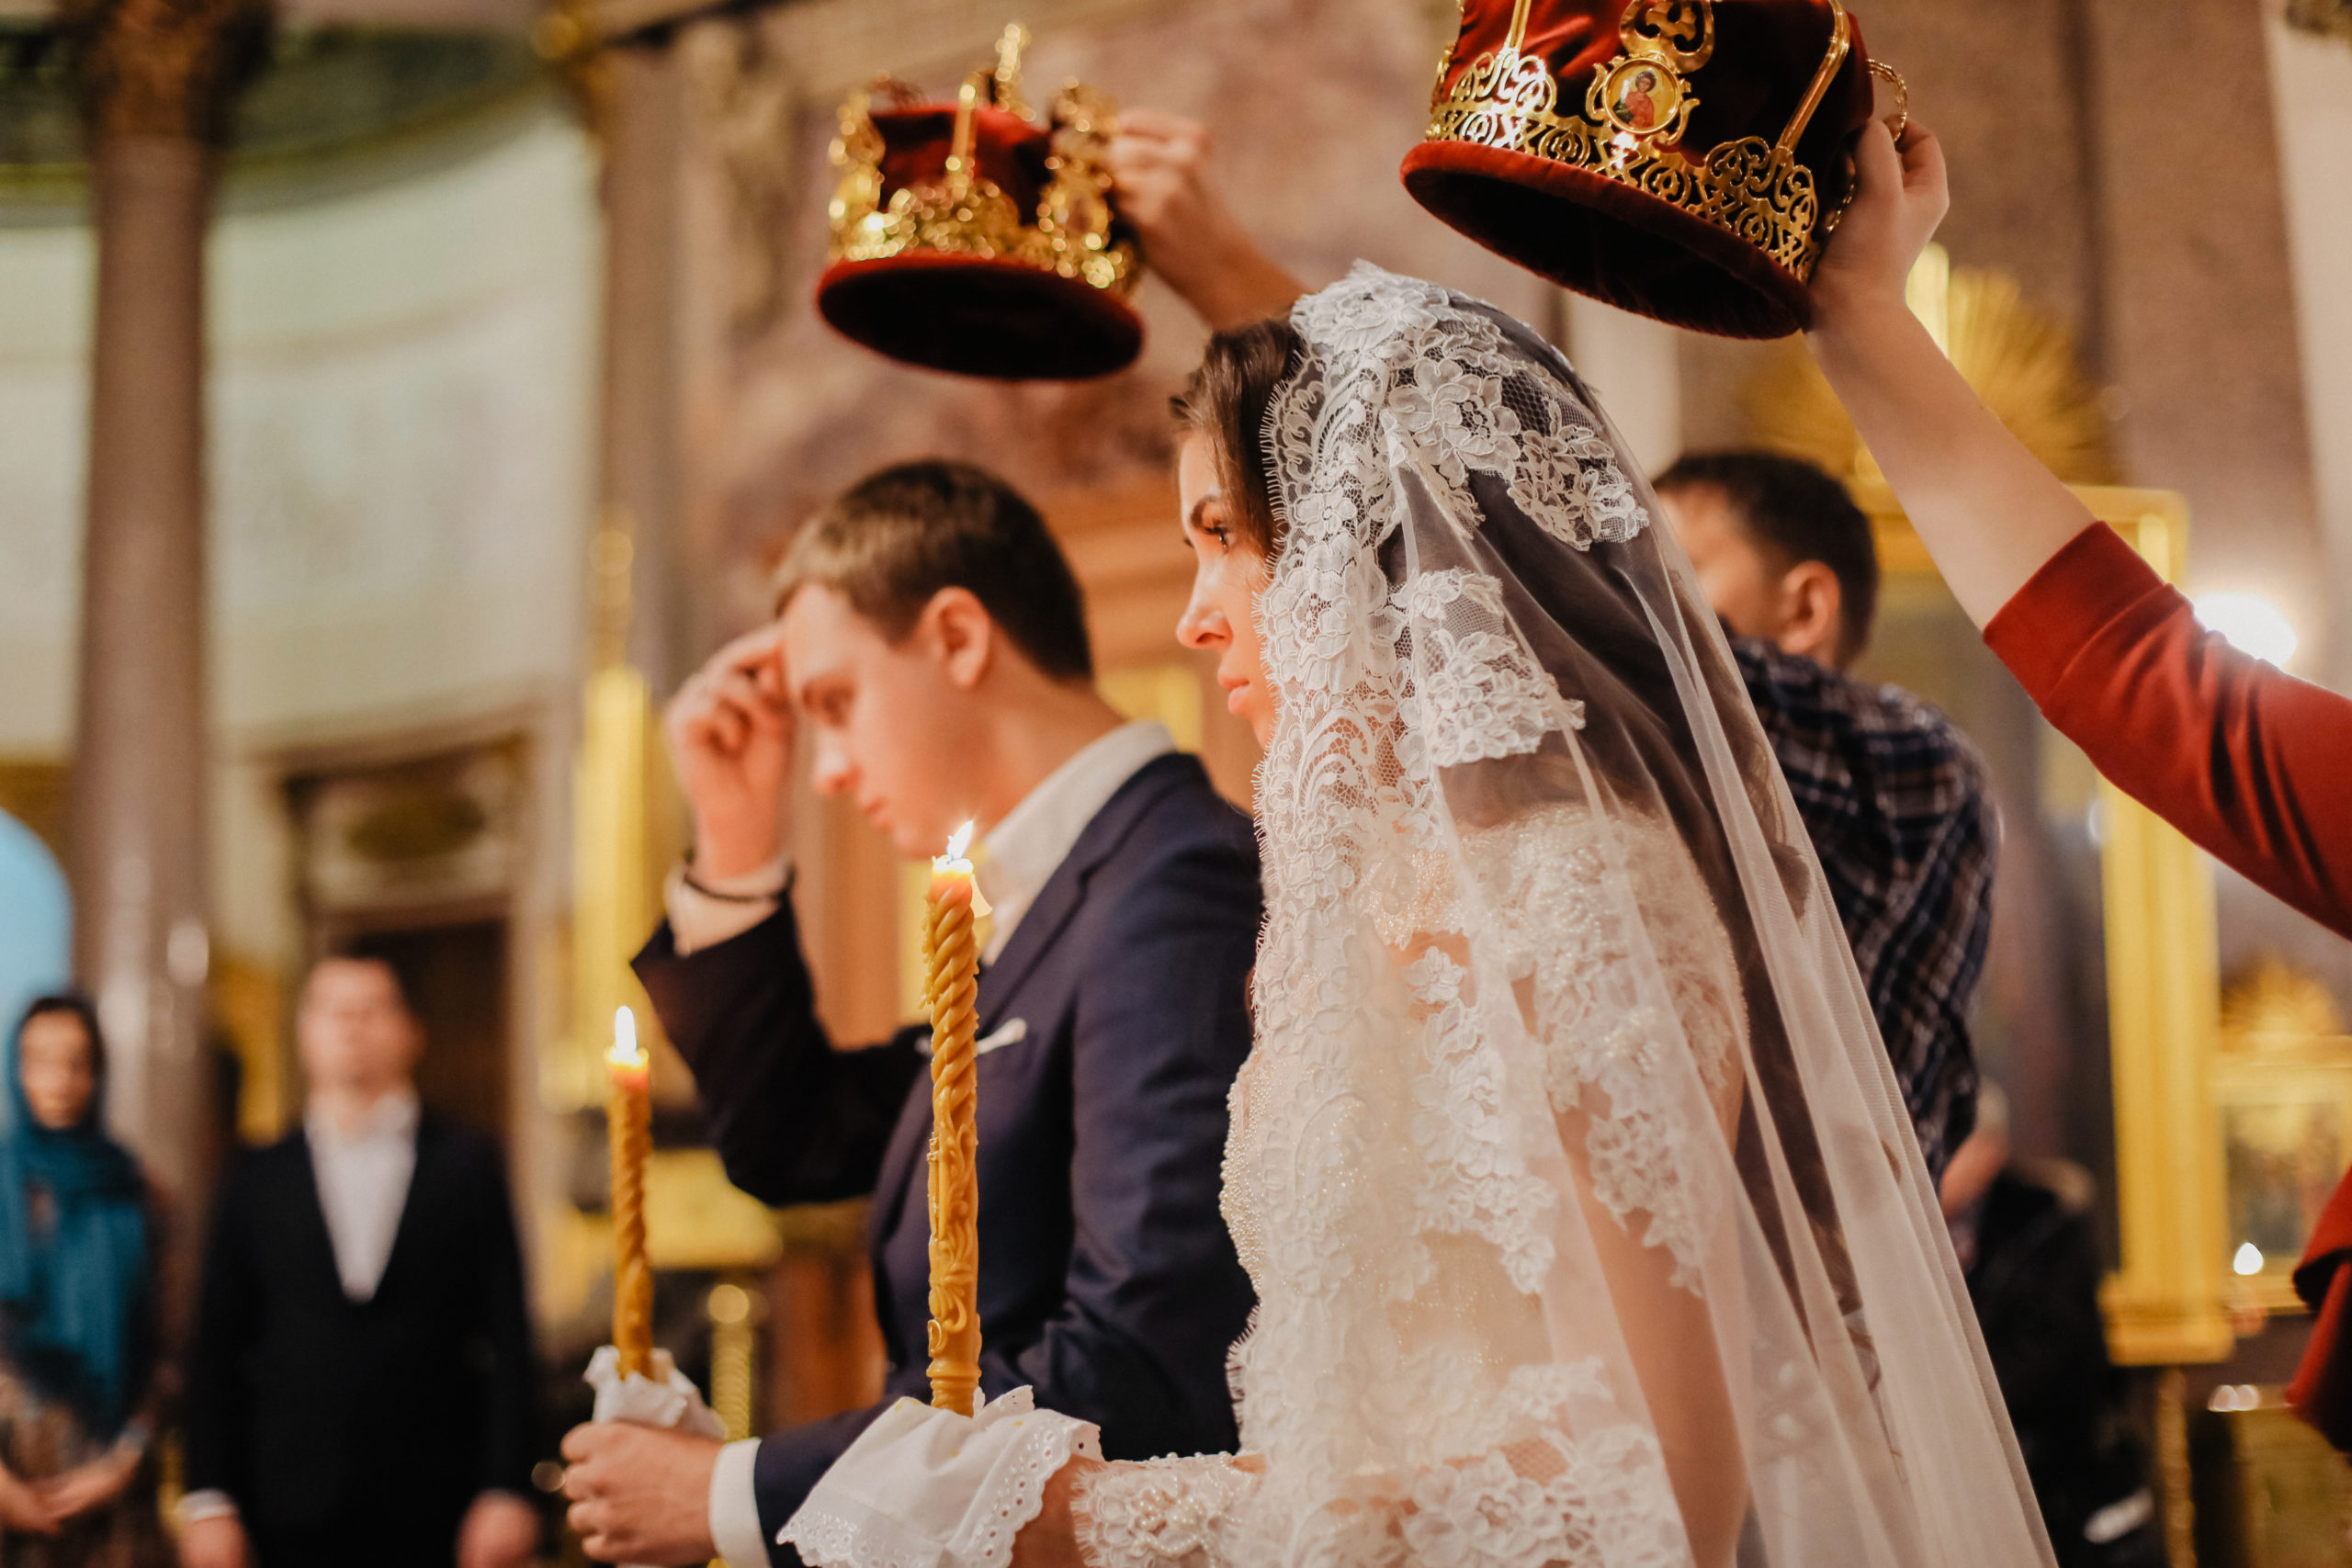 Венчание в церкви – правила и приметы в россии: можно ли есть или нужно поститься, что нельзя делать после церемонии, стоимость и атрибуты обряда